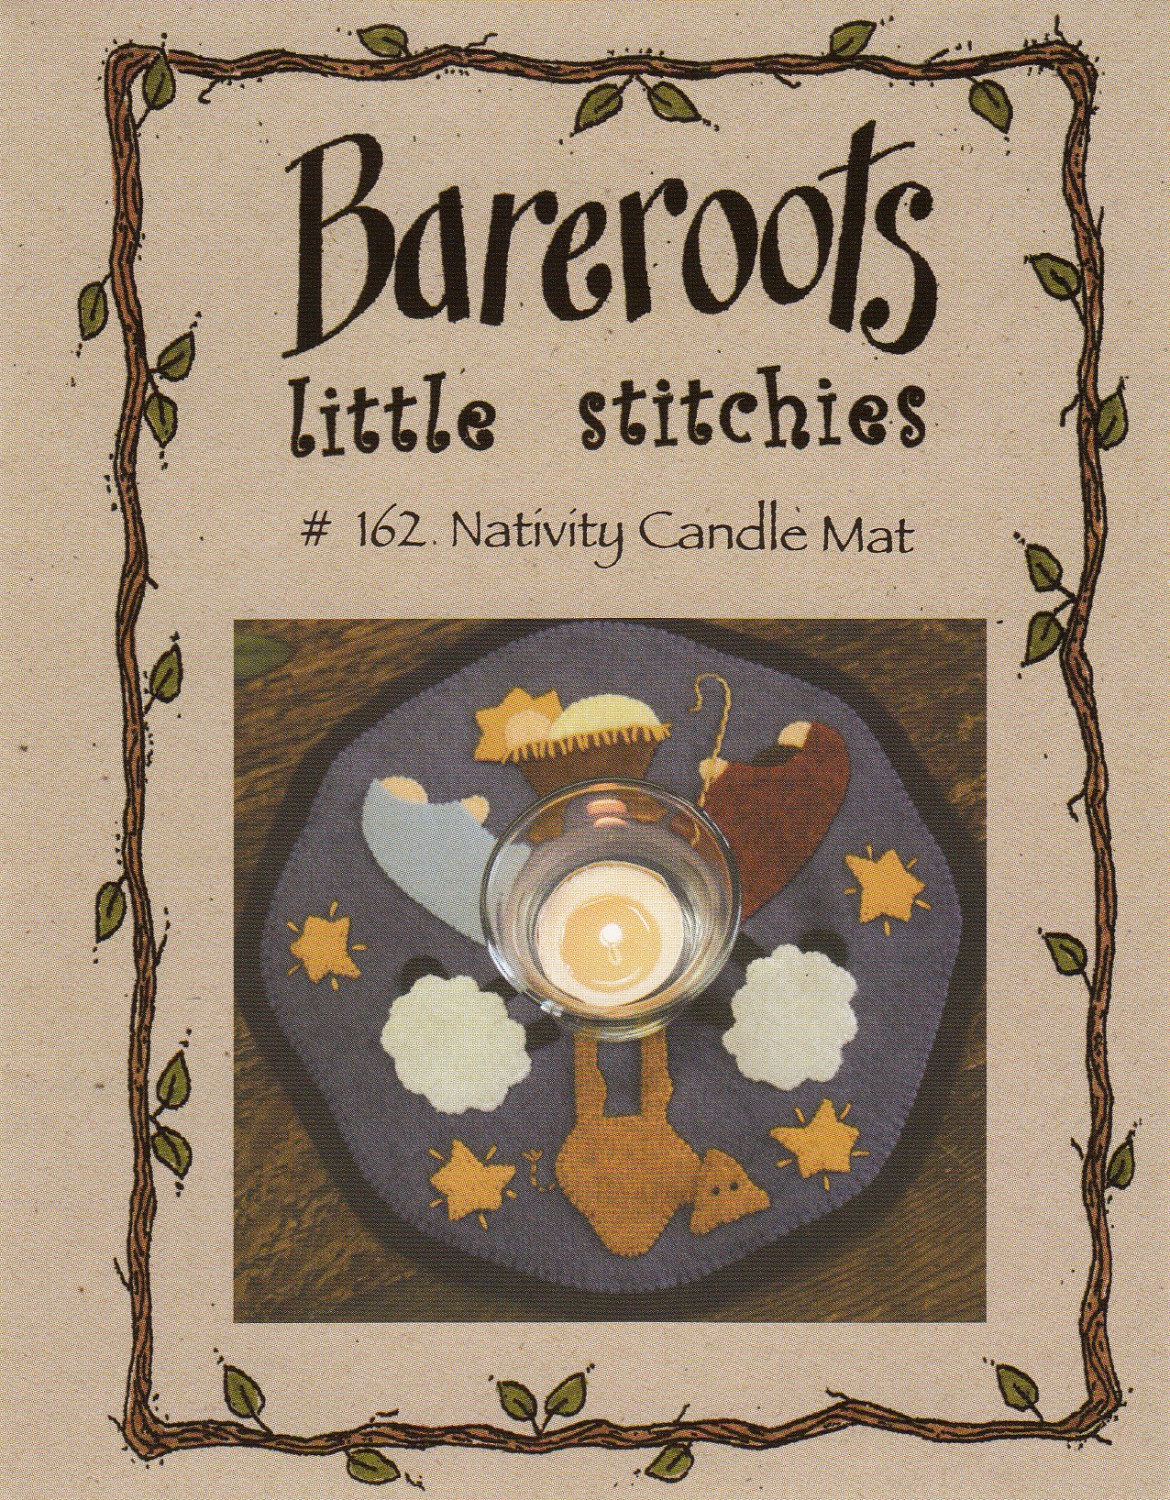 Bareroots Little Stitches Nativity Candle Mat Pattern